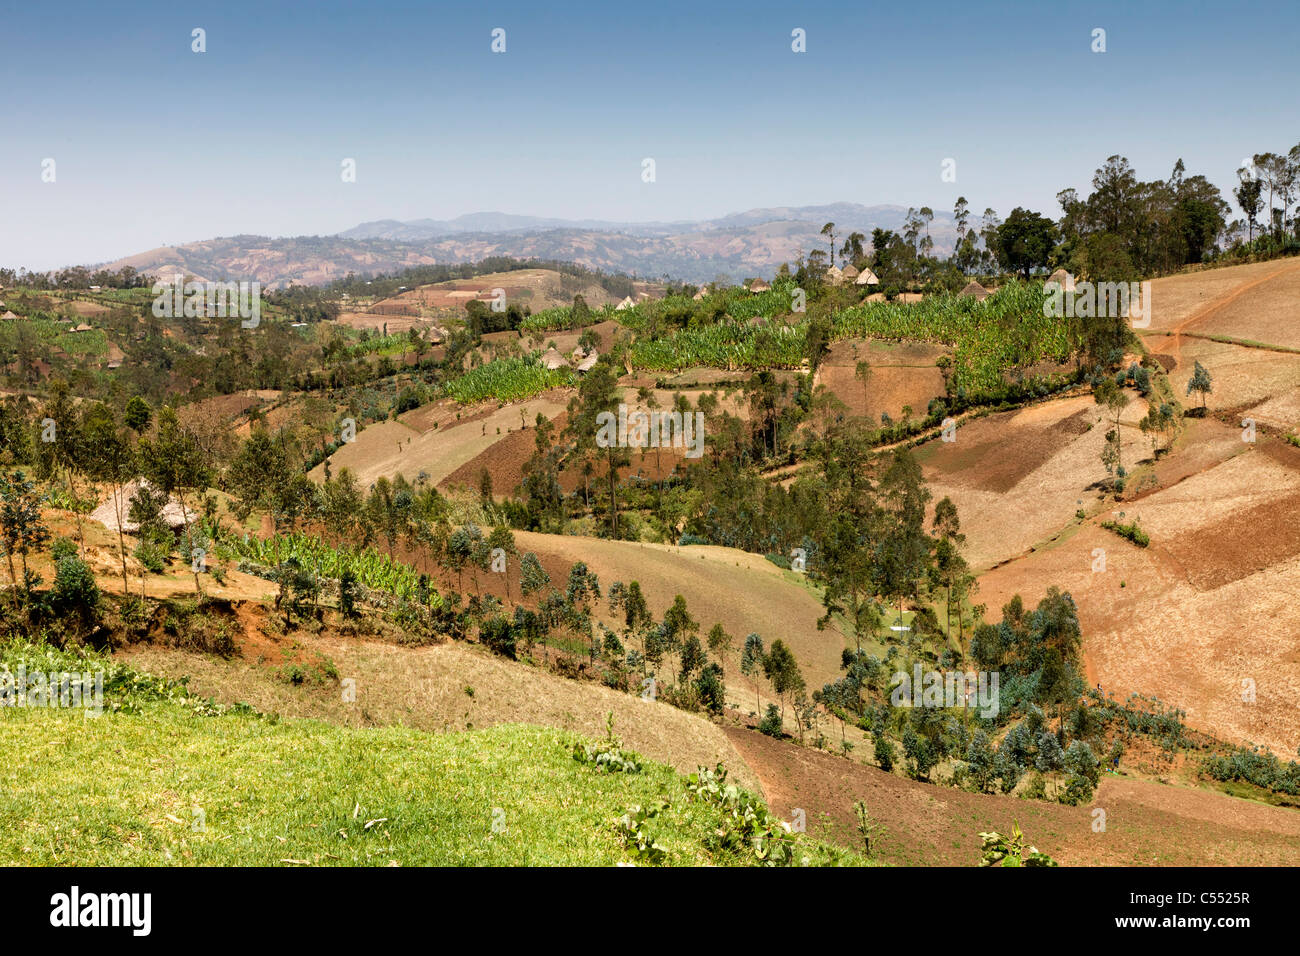 El paisaje en el sur de Etiopía. Foto de stock